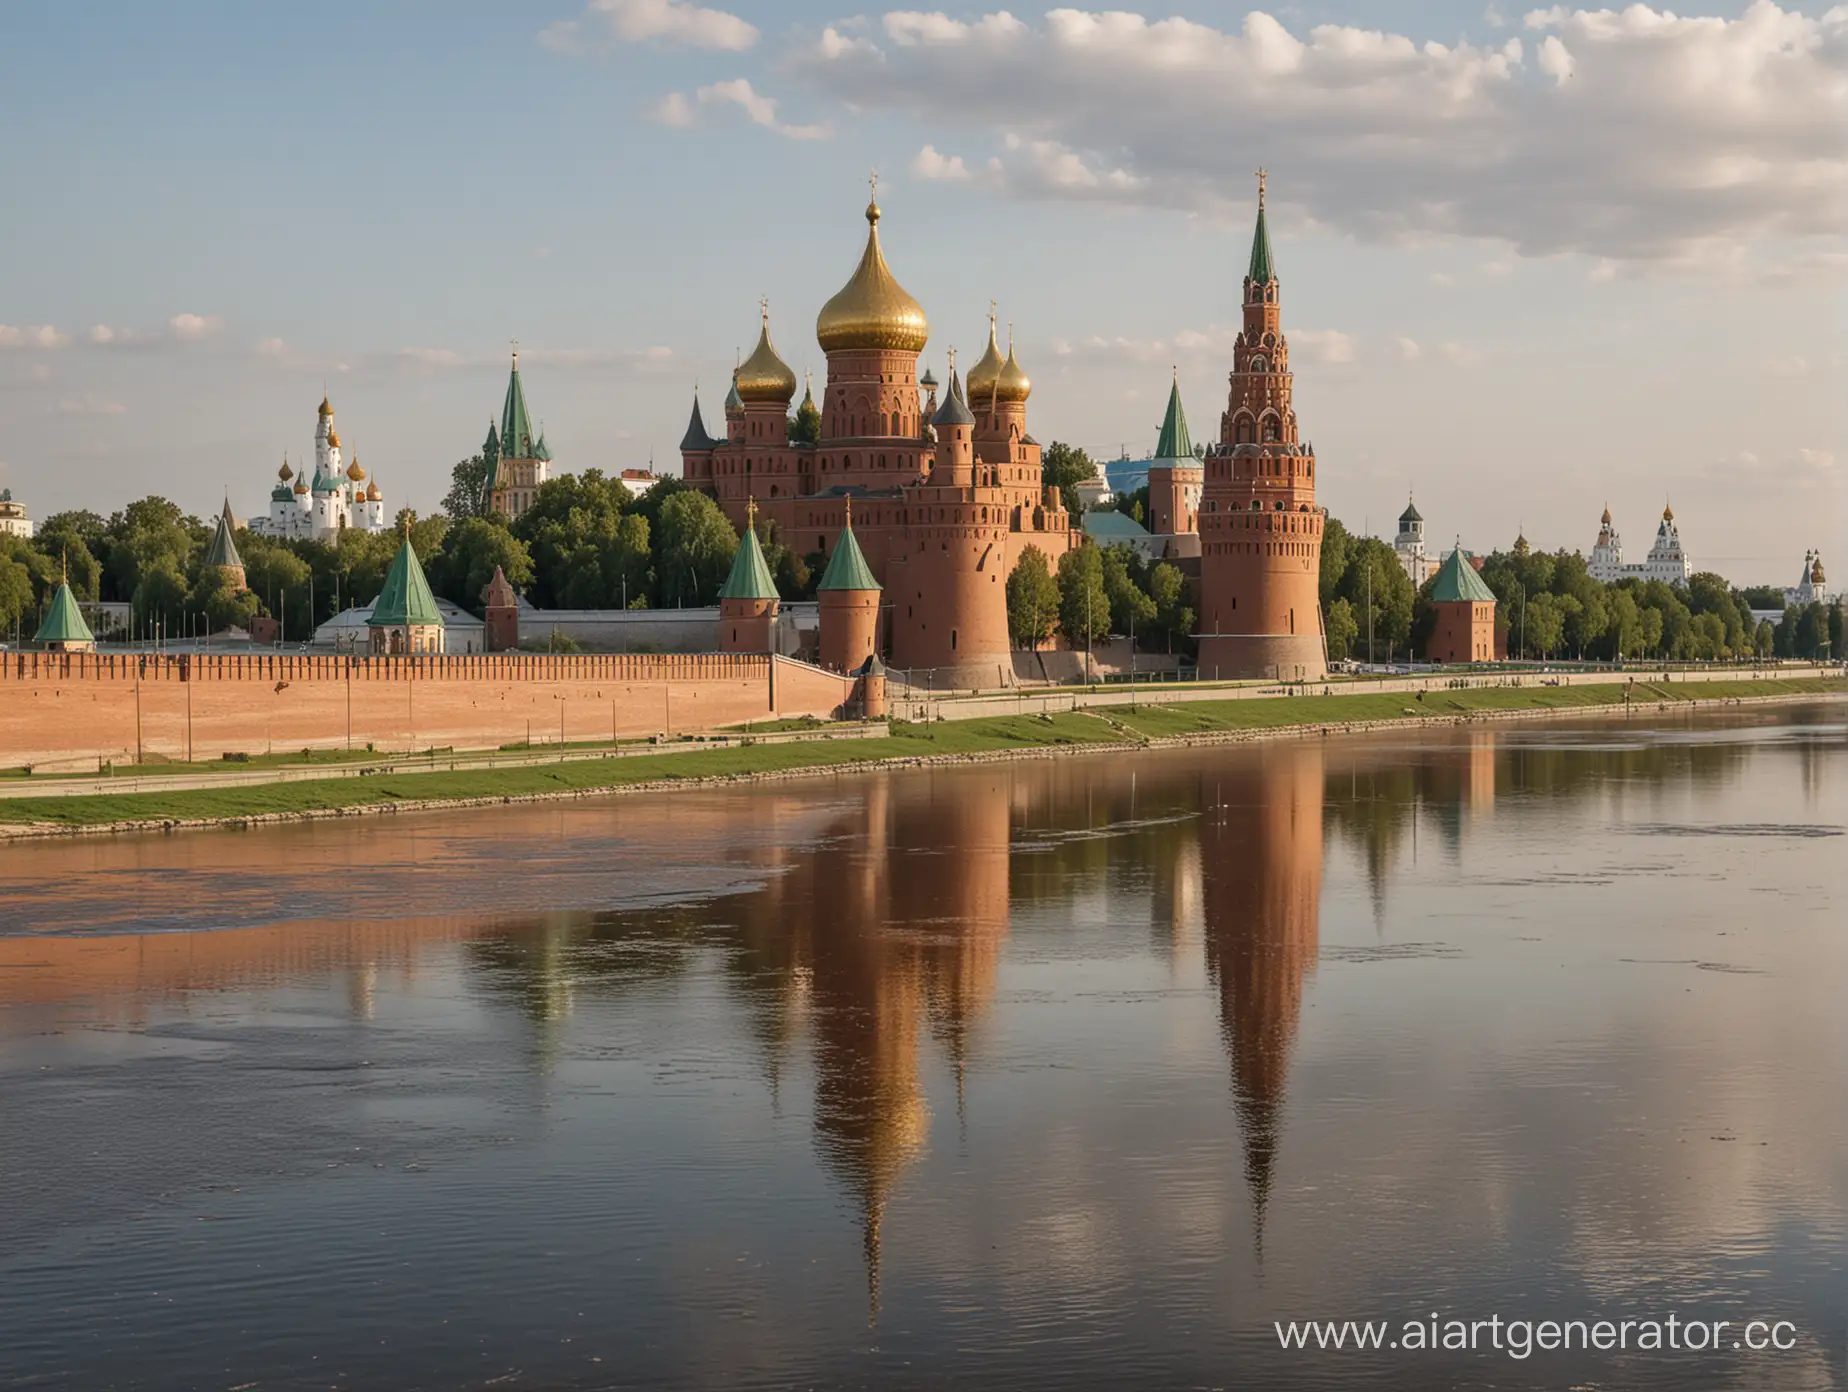 красивый не достроенный кремль, в России в городе Ярославле в 1500 году .На берегу реки Волги , Кремль готов на 60 процентов .строители работают ,люди , лето , красиво , много деталей 